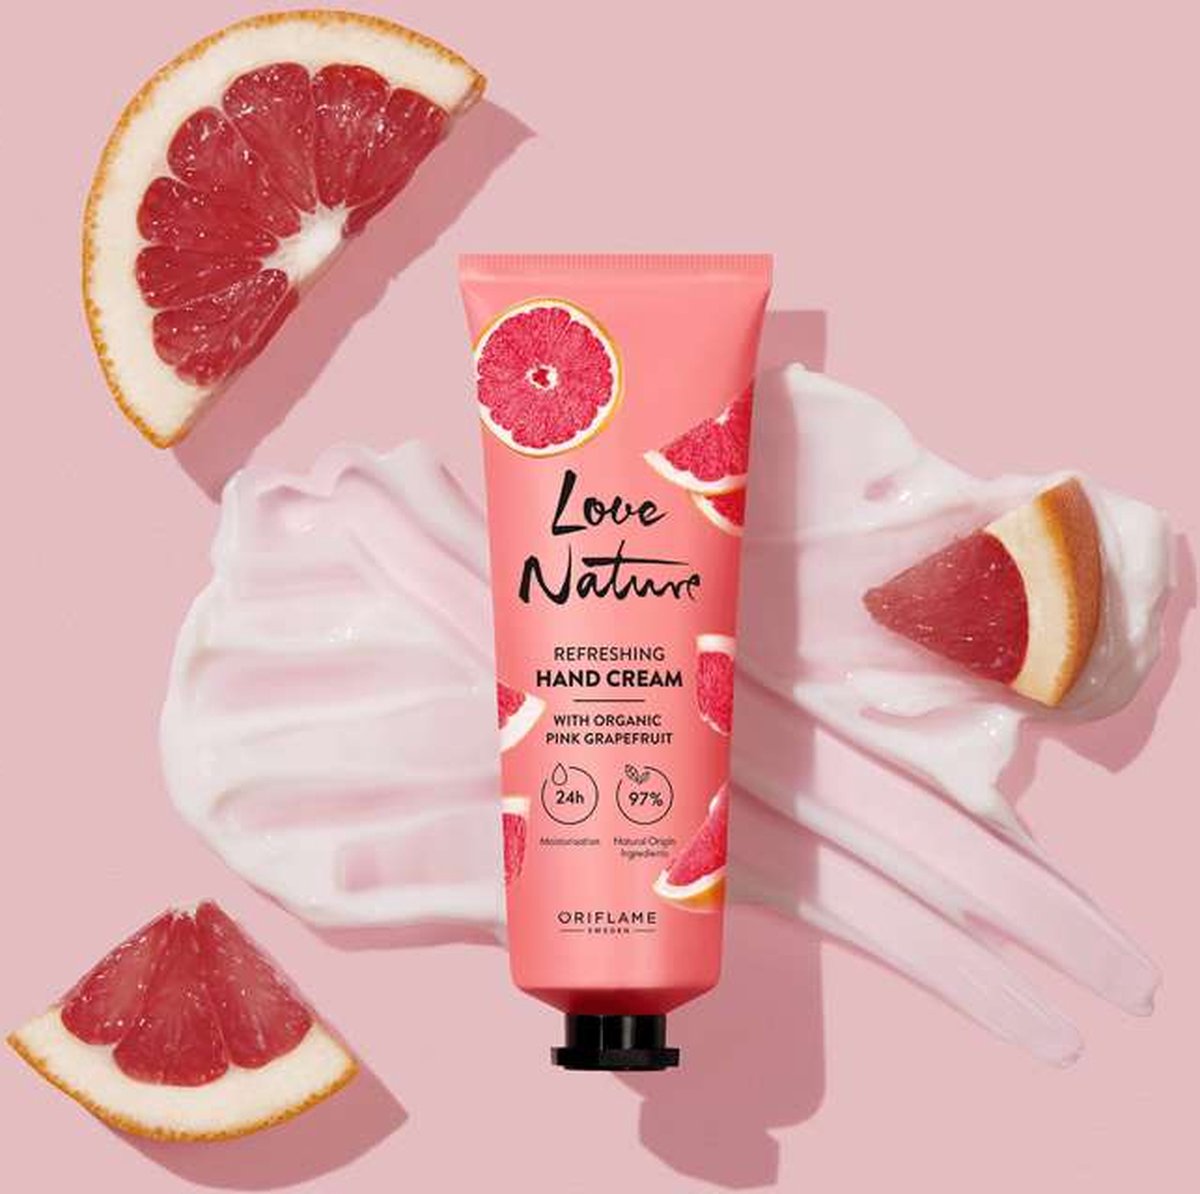 LOVE NATURE Refreshing Hand Cream with Organic Pink Grapefruit